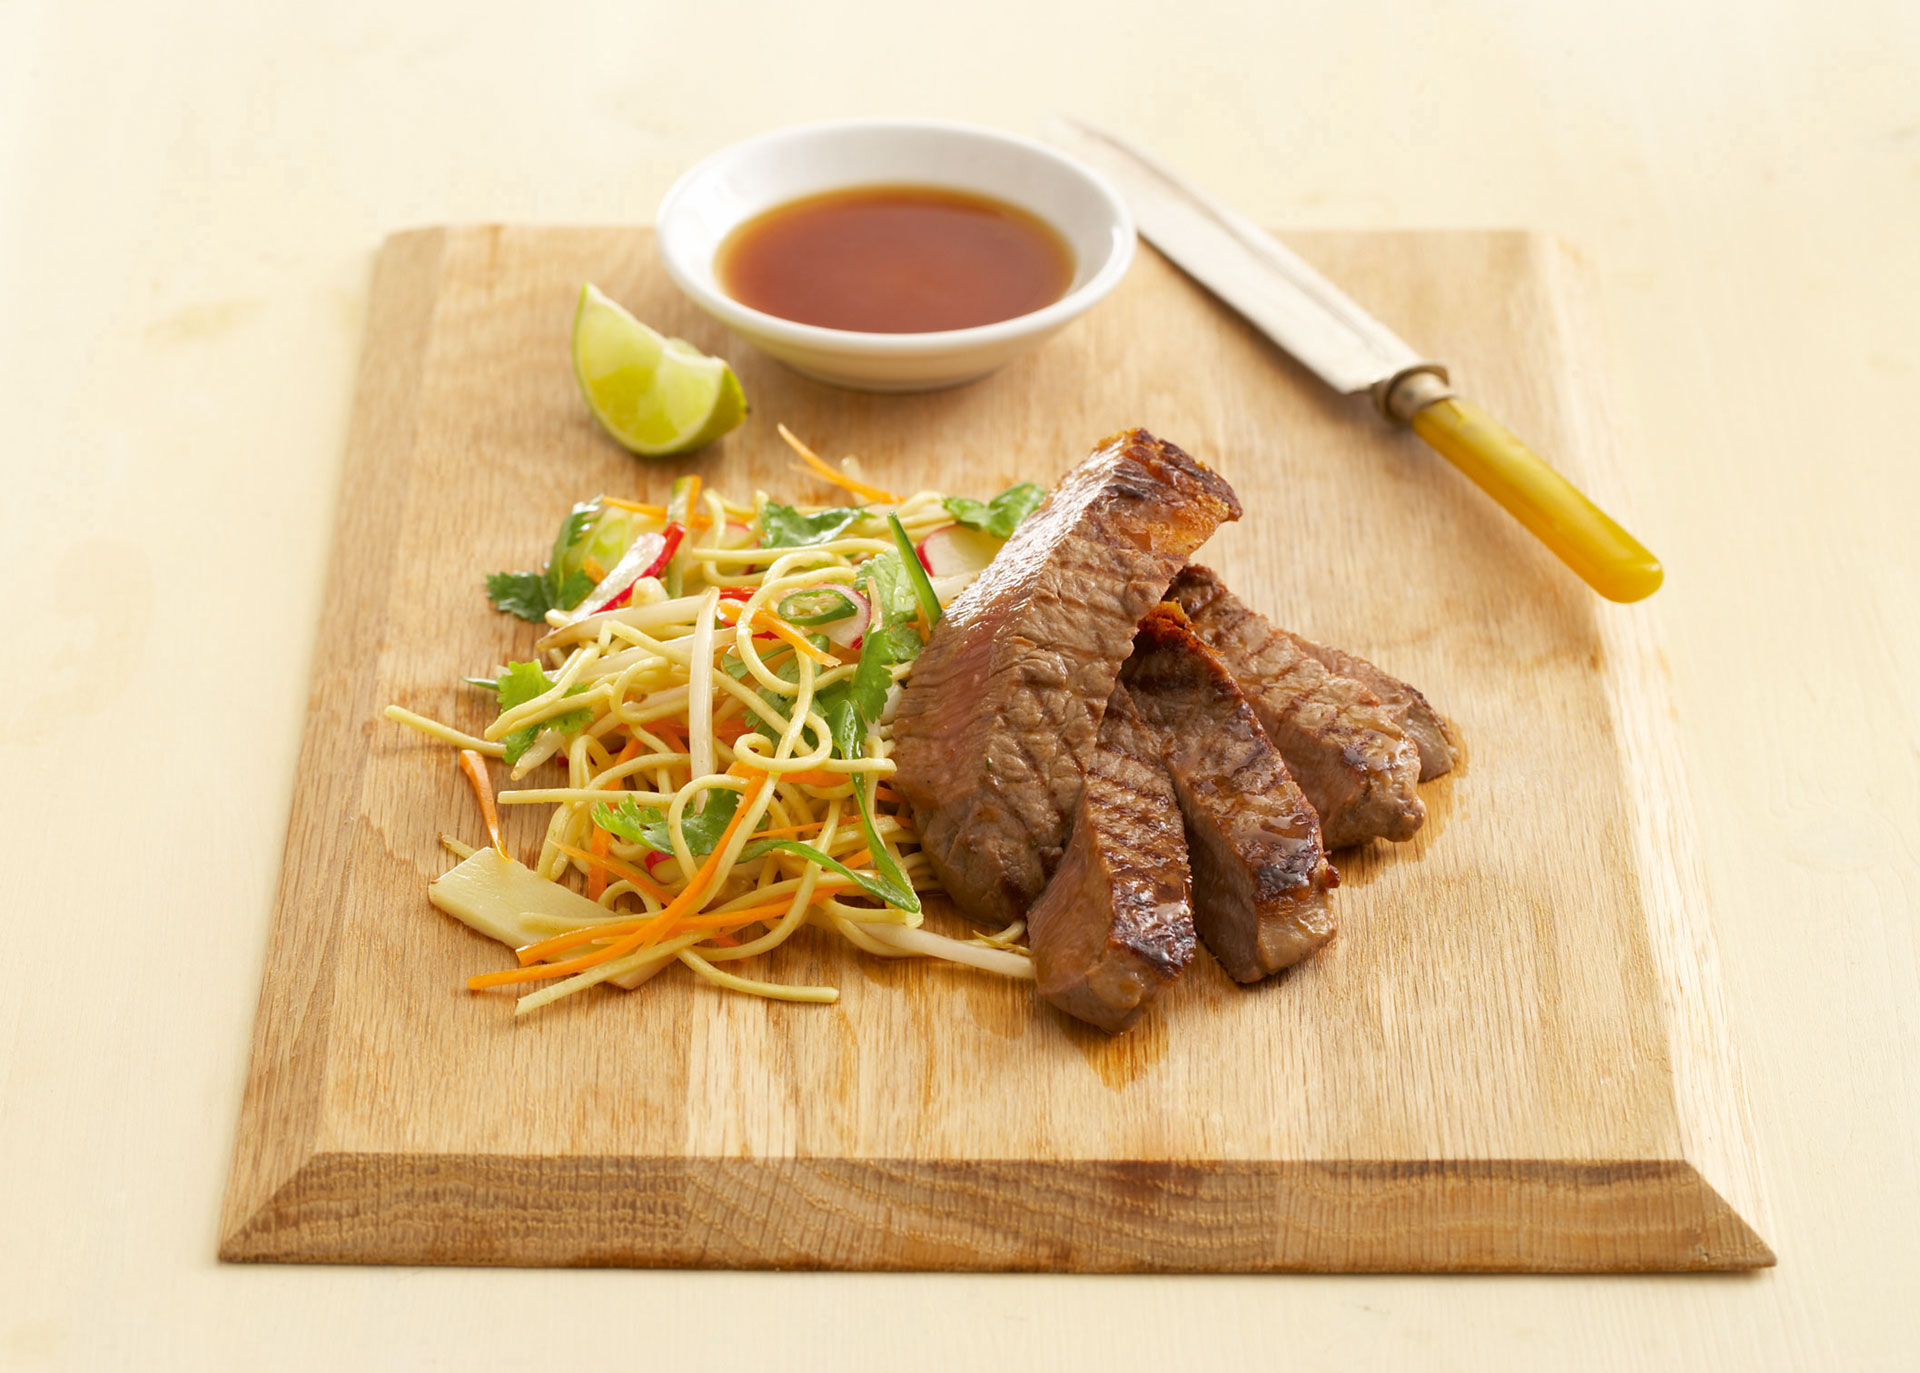 Eiernudel-Salat, gegrilltes Steak in Scheiben und ein Schälchen mit Sauce angerichtet auf einem Holzbrett